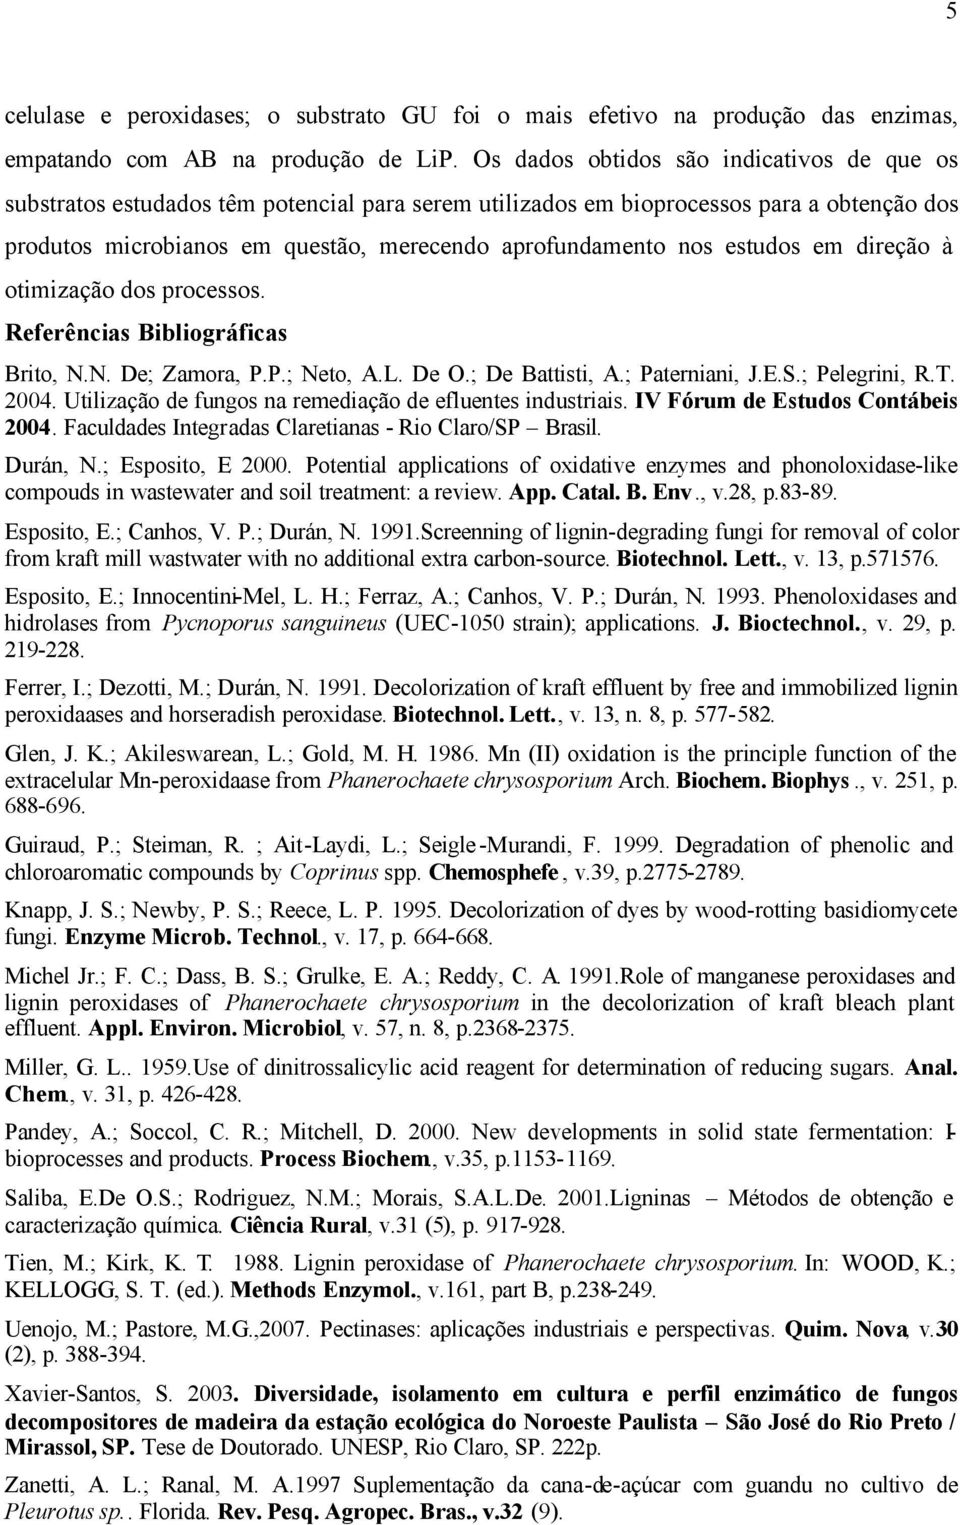 estudos em direção à otimização dos processos. Referências Bibliográficas Brito, N.N. De; Zamora, P.P.; Neto, A.L. De O.; De Battisti, A.; Paterniani, J.E.S.; Pelegrini, R.T. 2004.